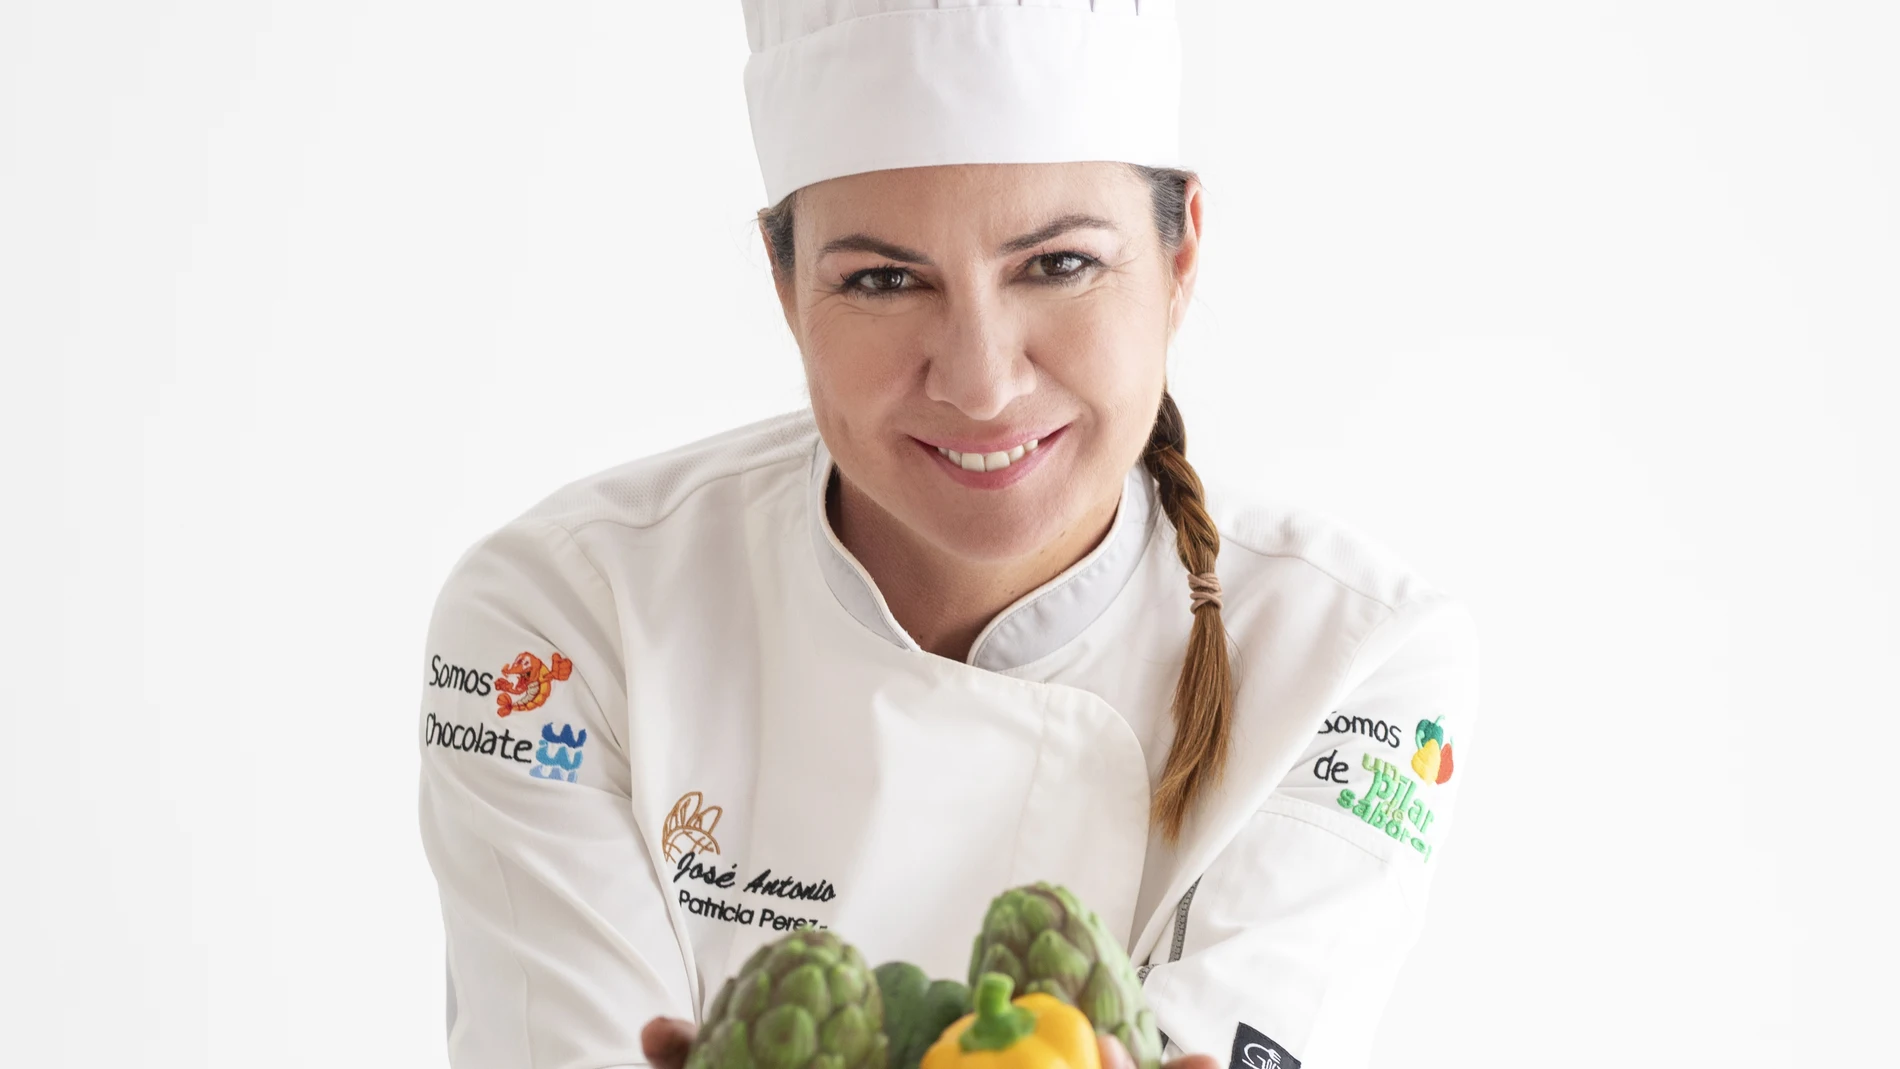 Patricia Pérez pertenece a la cuarta generación al frente de la panadería y confitería José Antonio